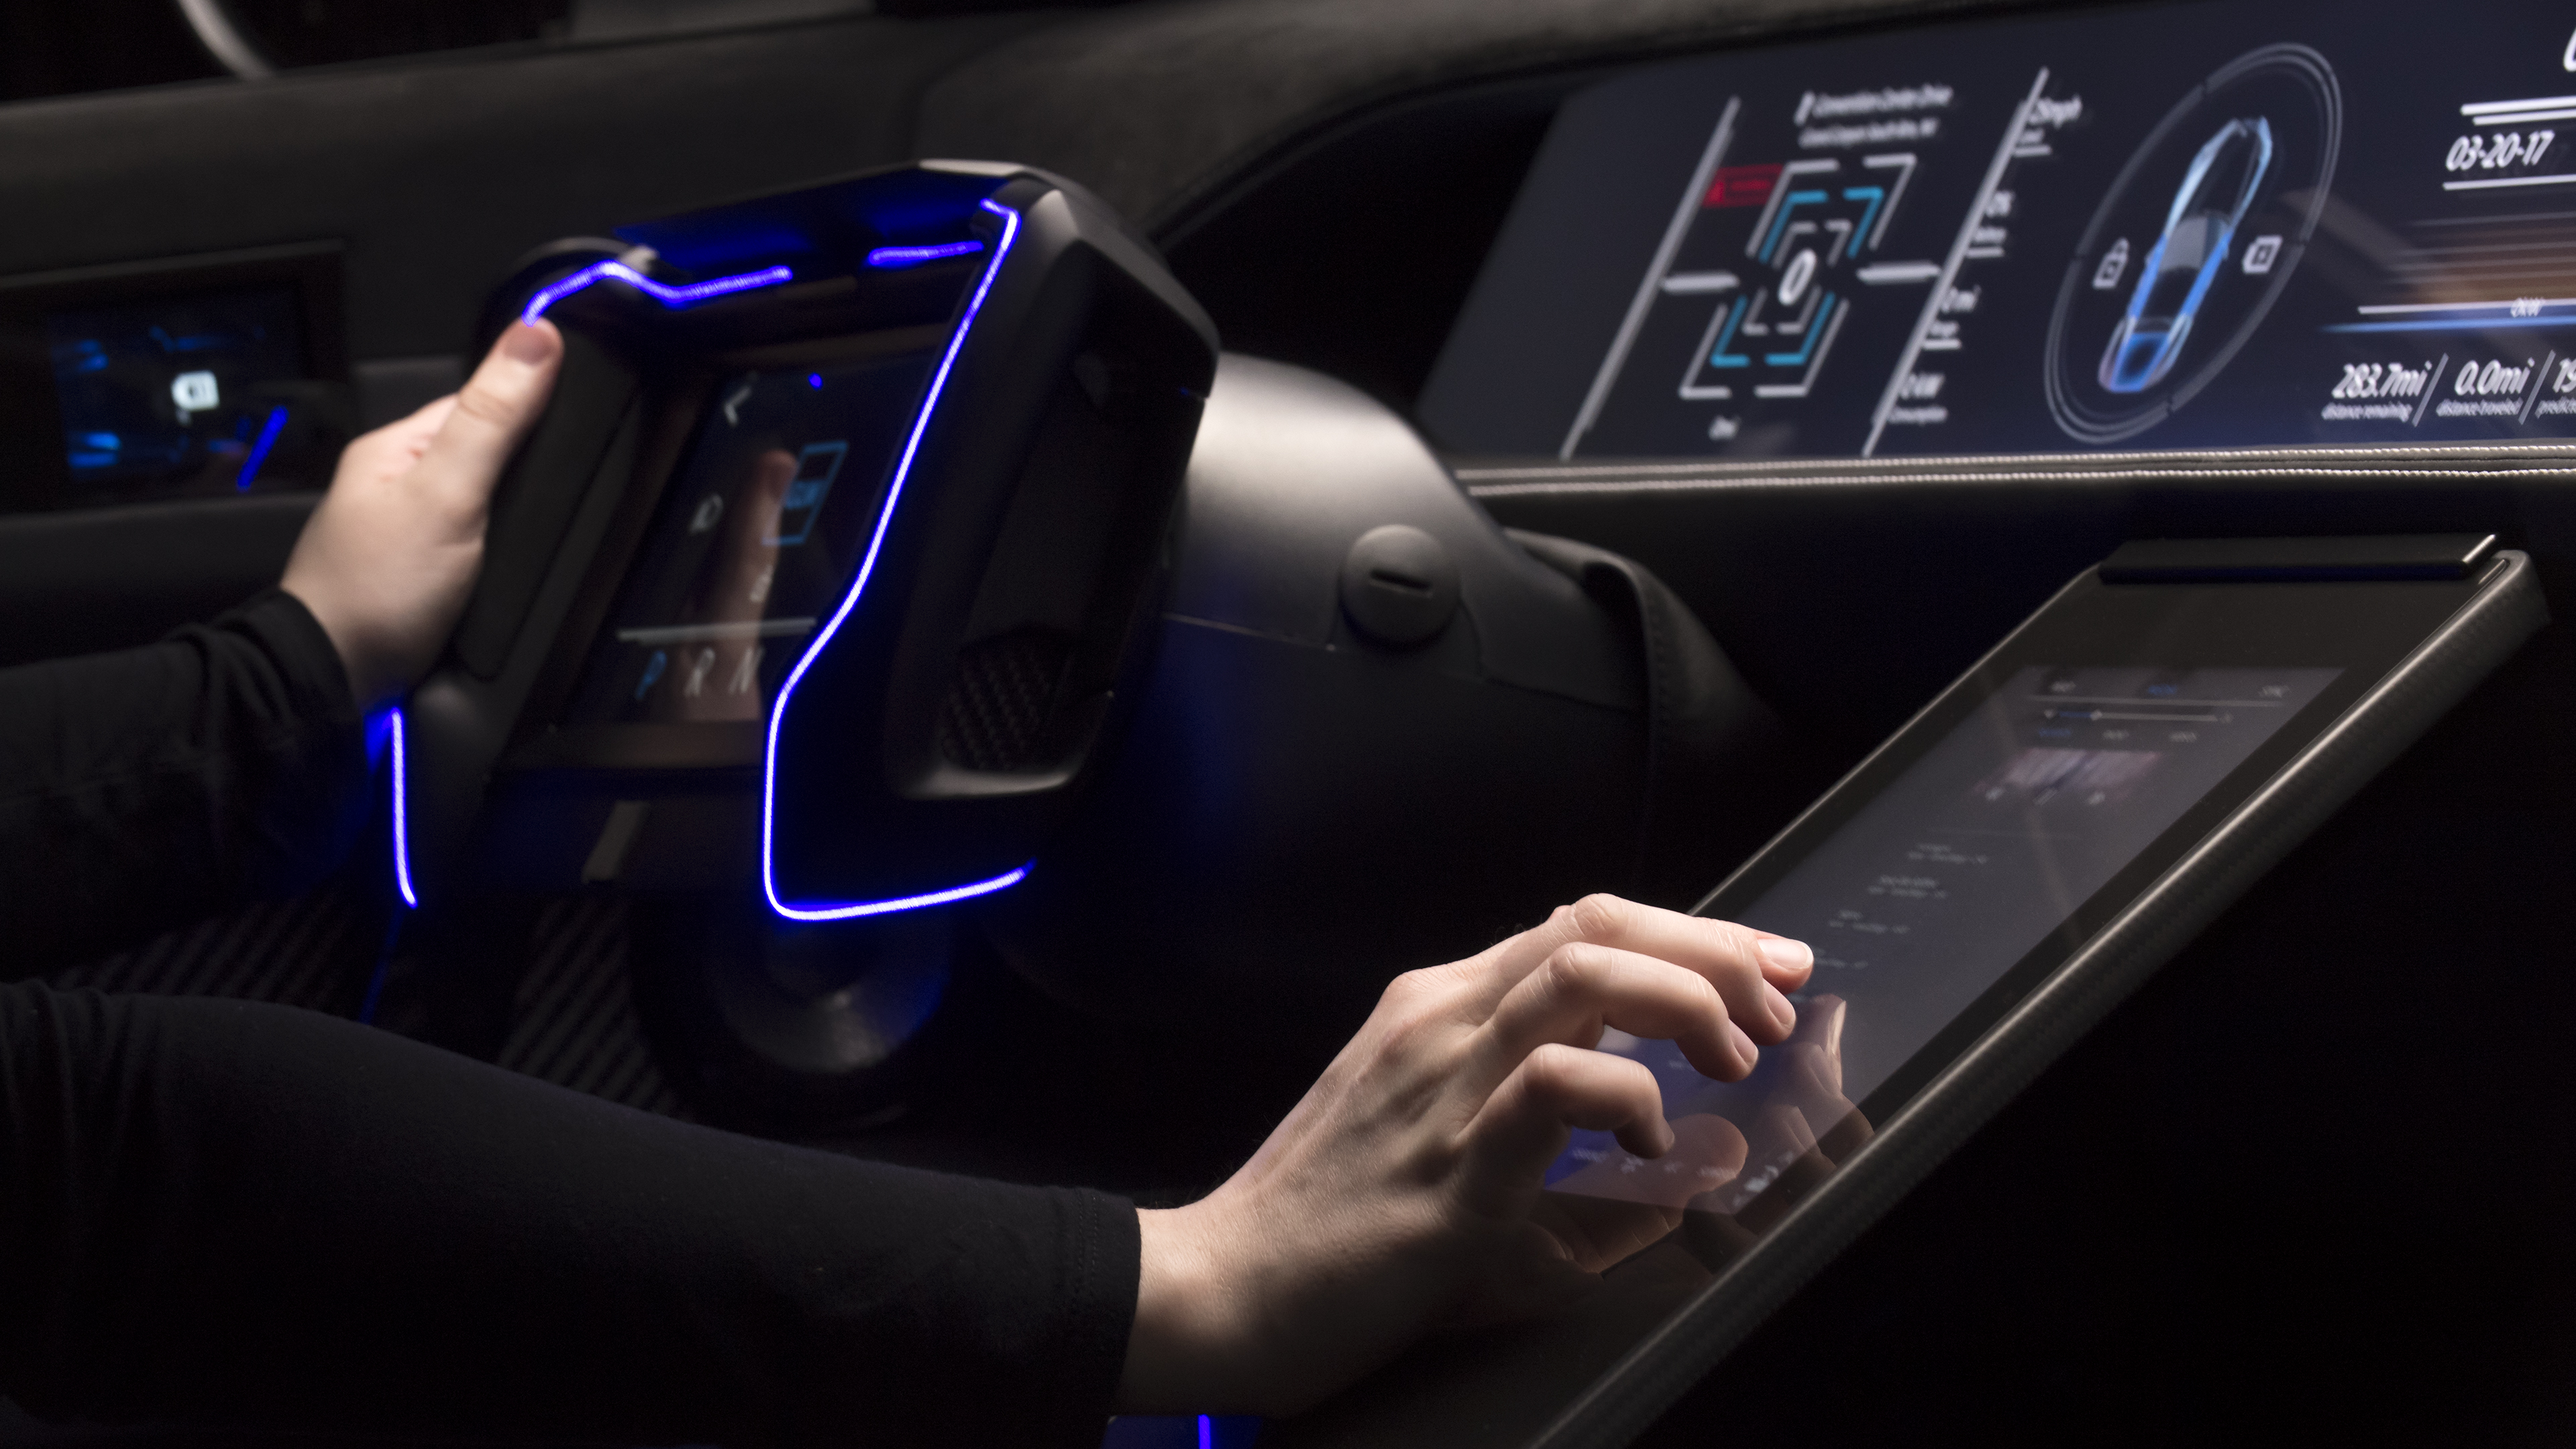 A concept car features a Gorilla Glass interior console.